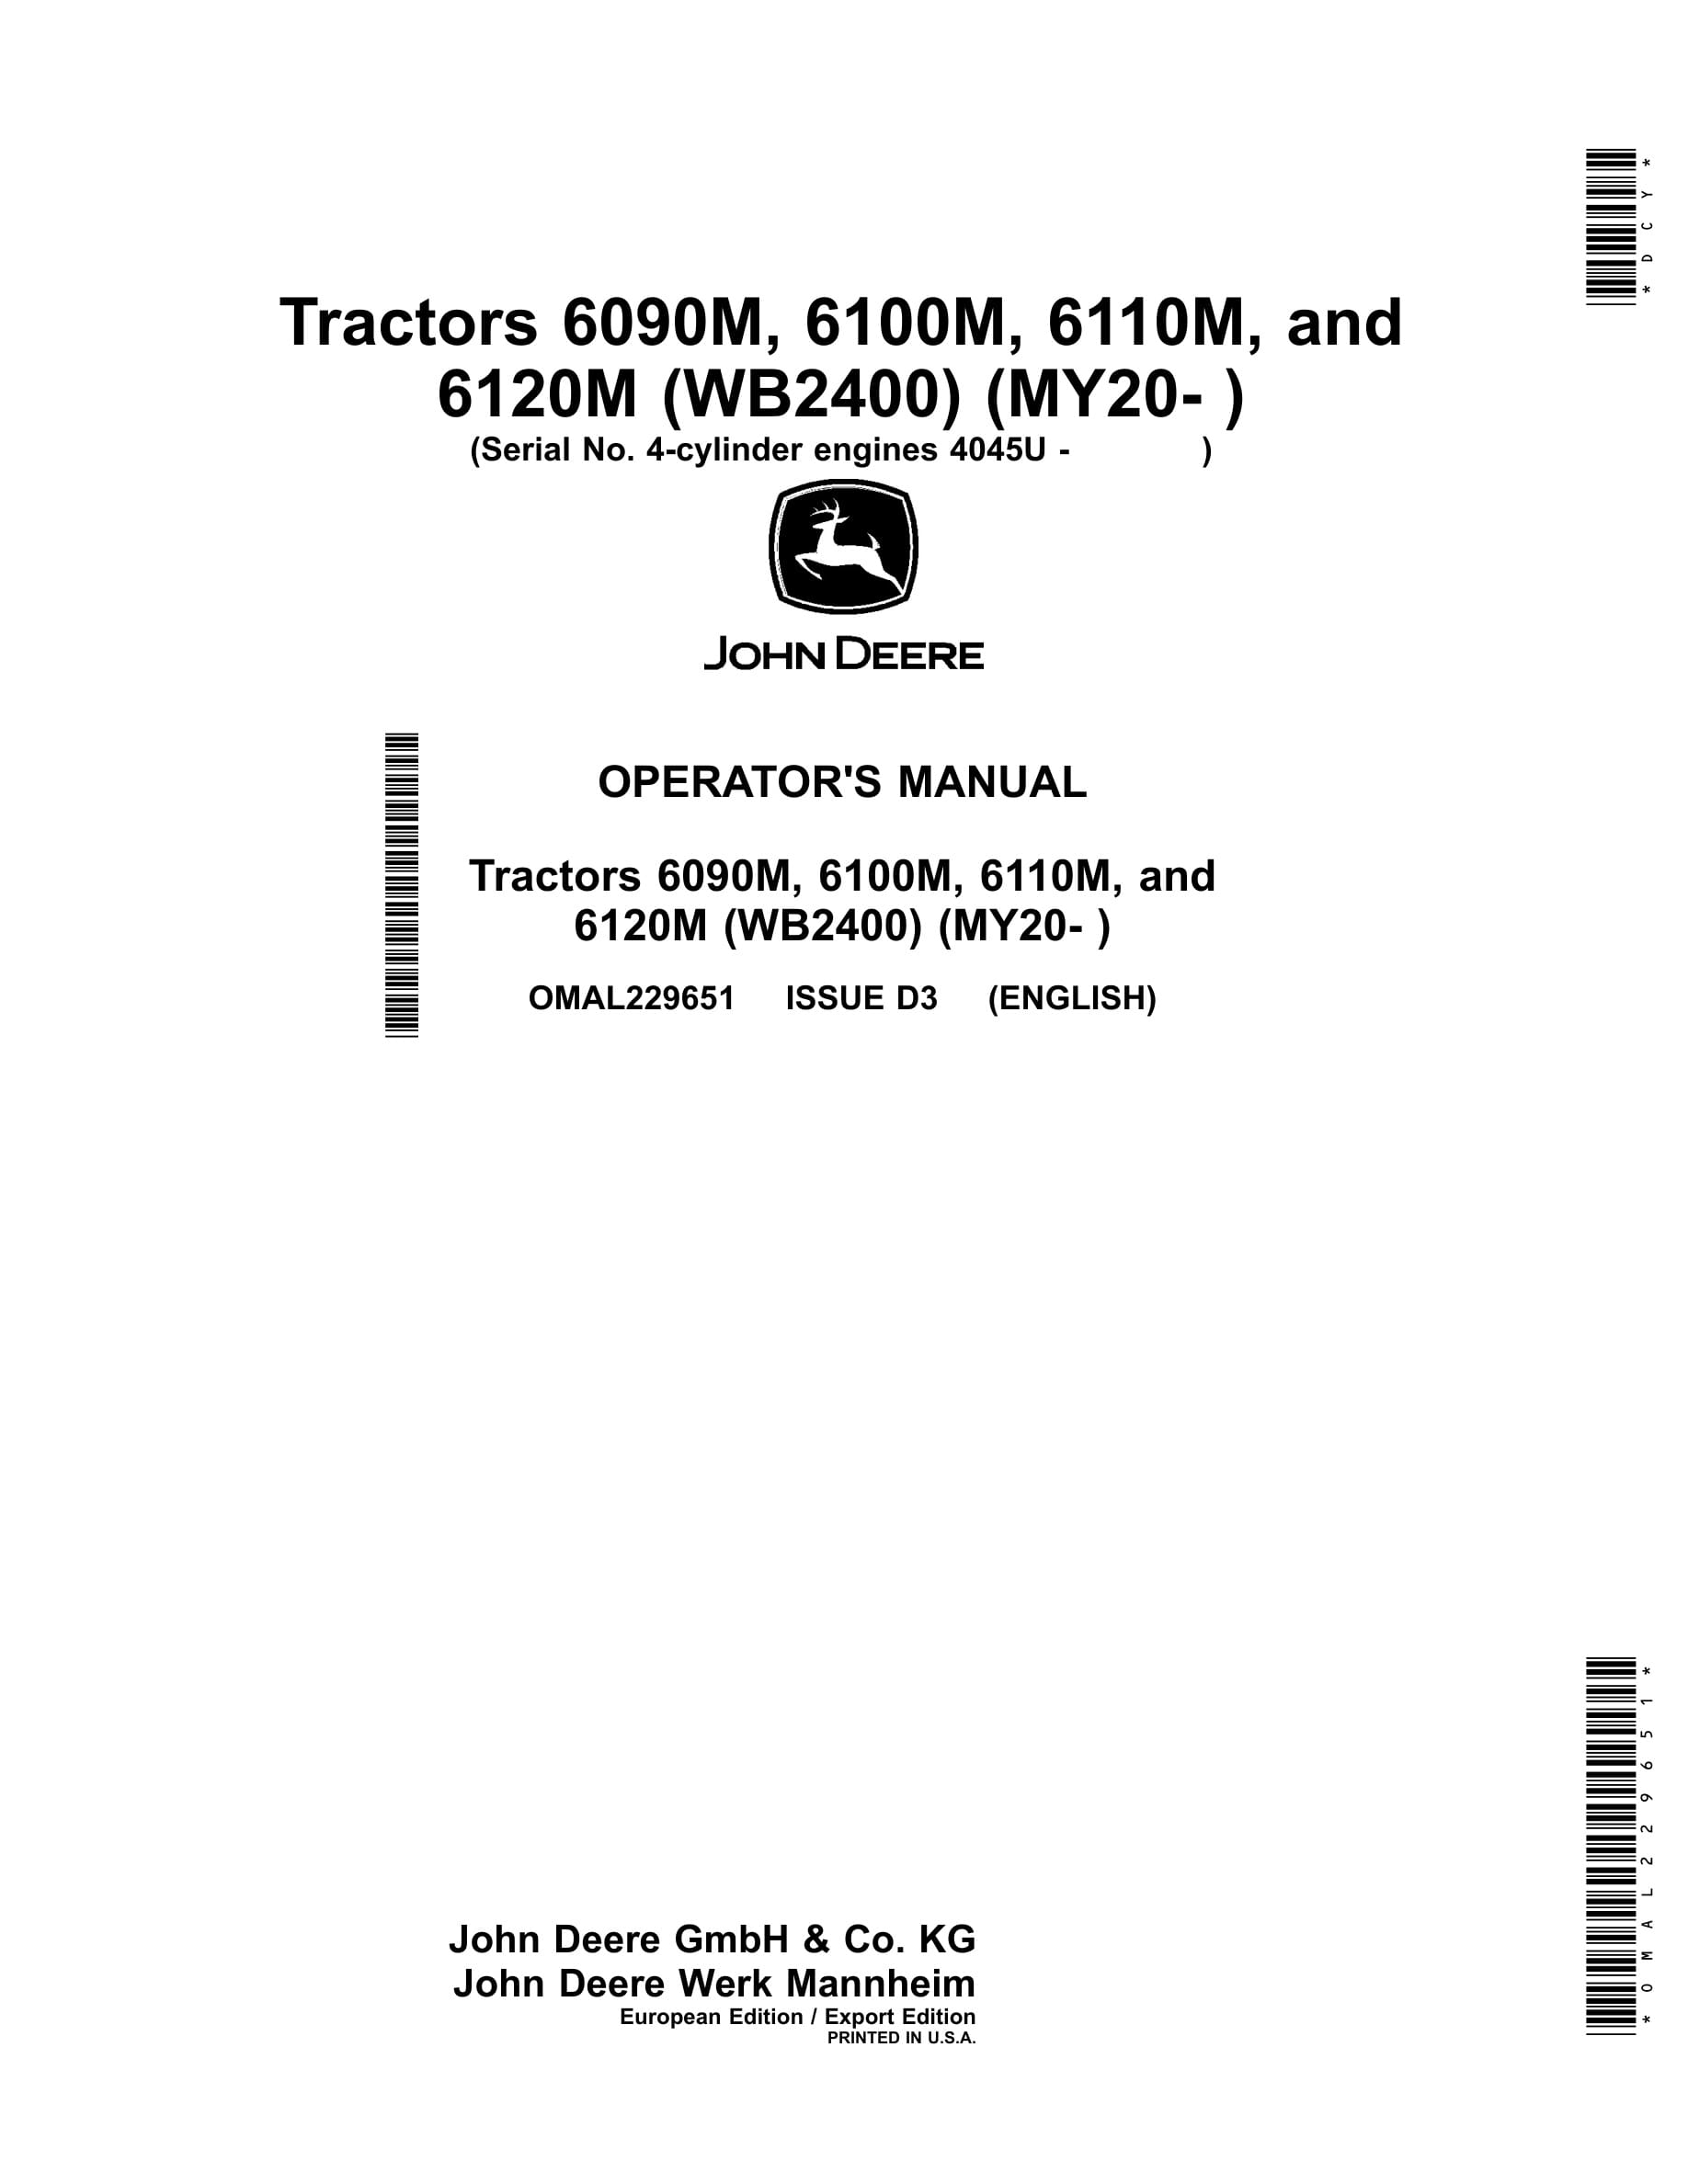 John Deere 6090m, 6100m, 6110m, And 6120m Tractors Operator Manuals OMAL229651-1